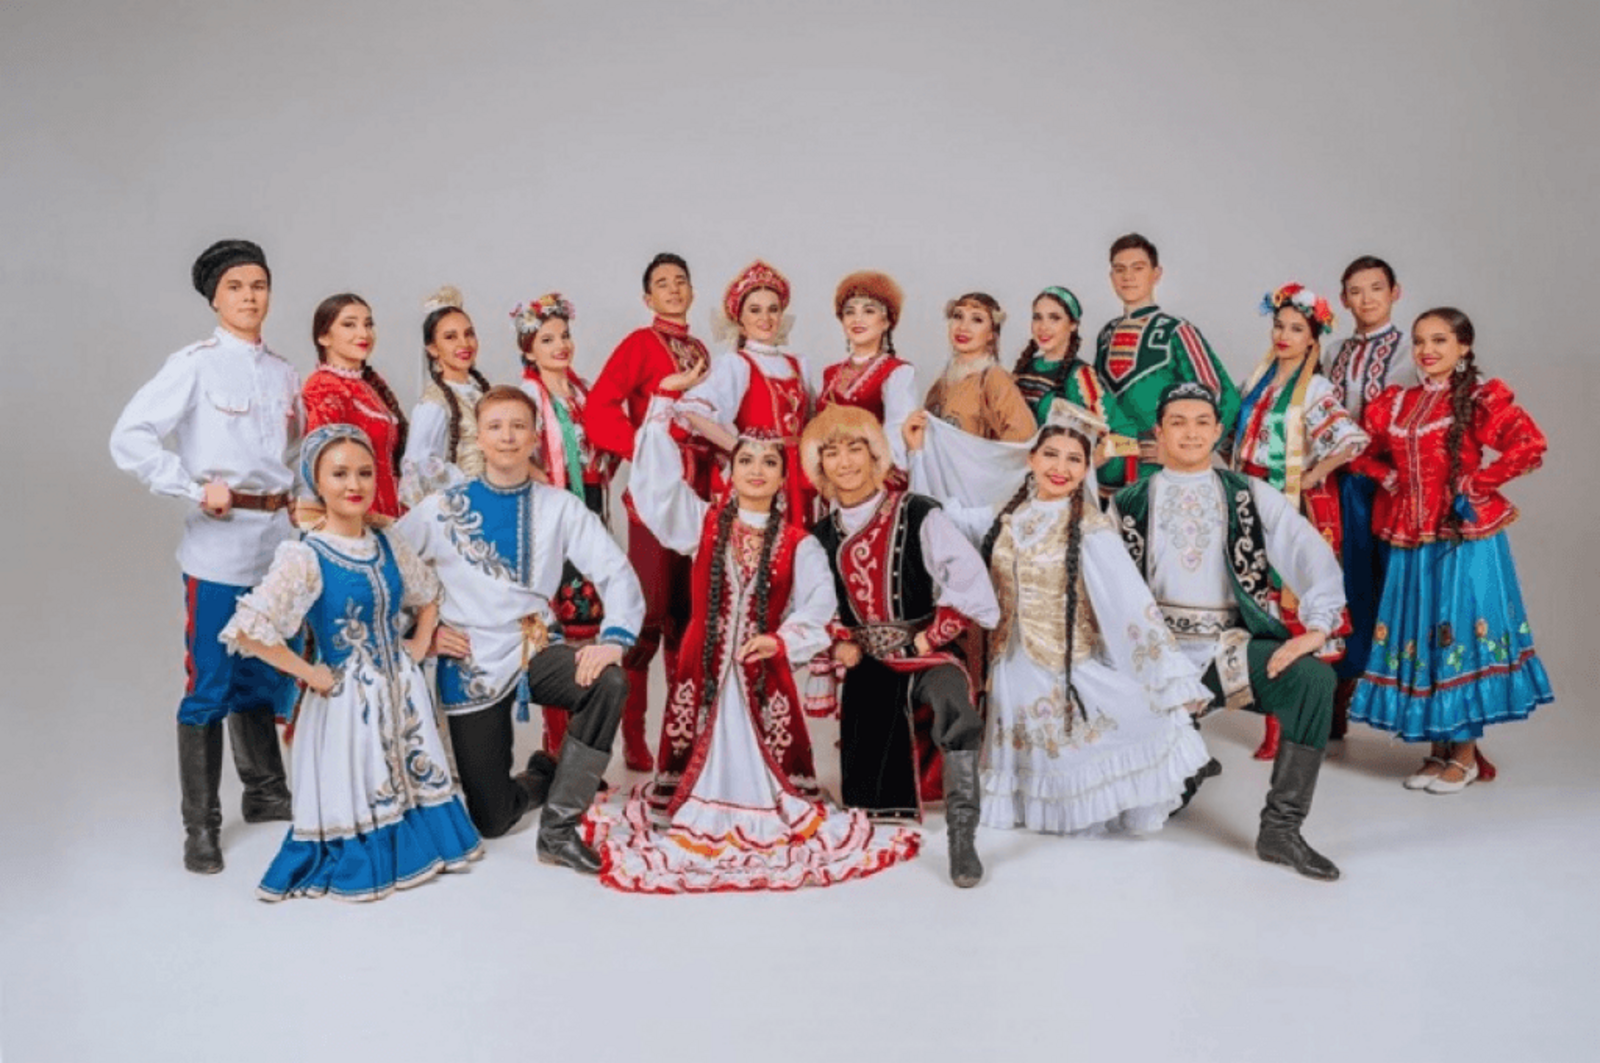 Сегодня в Башкортостане - празднование Дня национального костюма